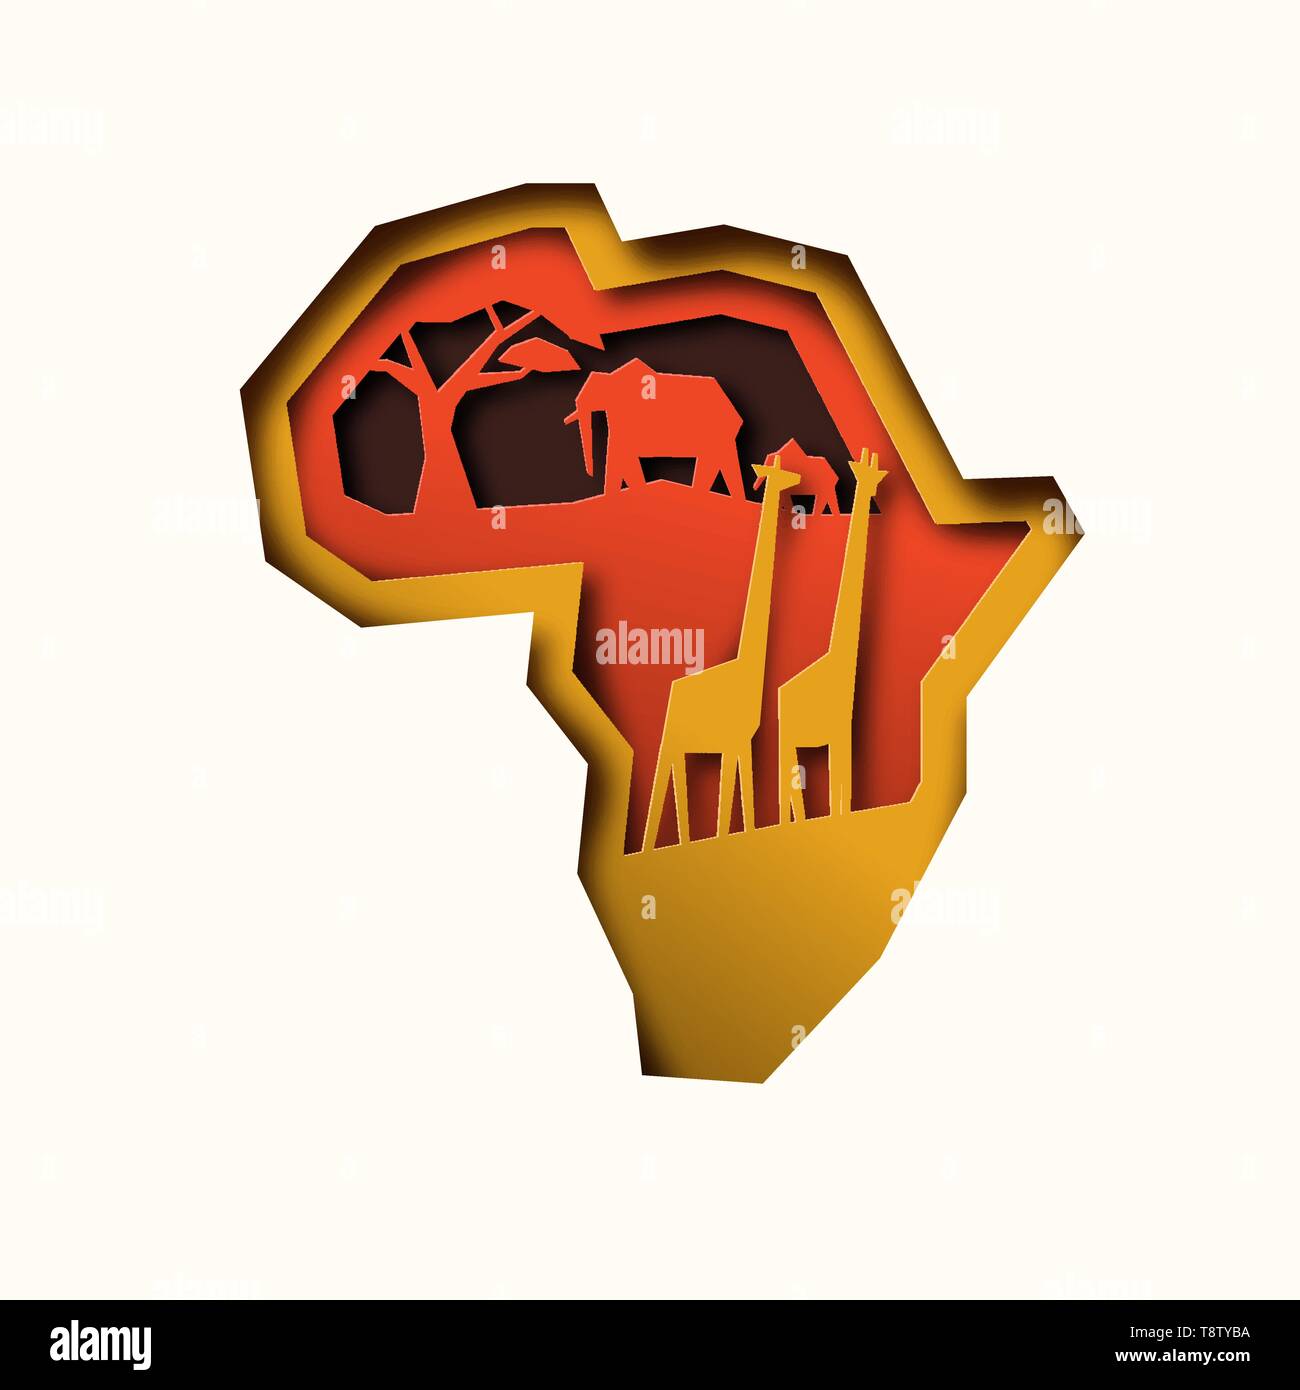 Afrika kontinent Karte Abbildung in papercut Stil, mit wilden afrikanischen Tieren. Mit ausschnitt Elefant und Giraffe. Stock Vektor